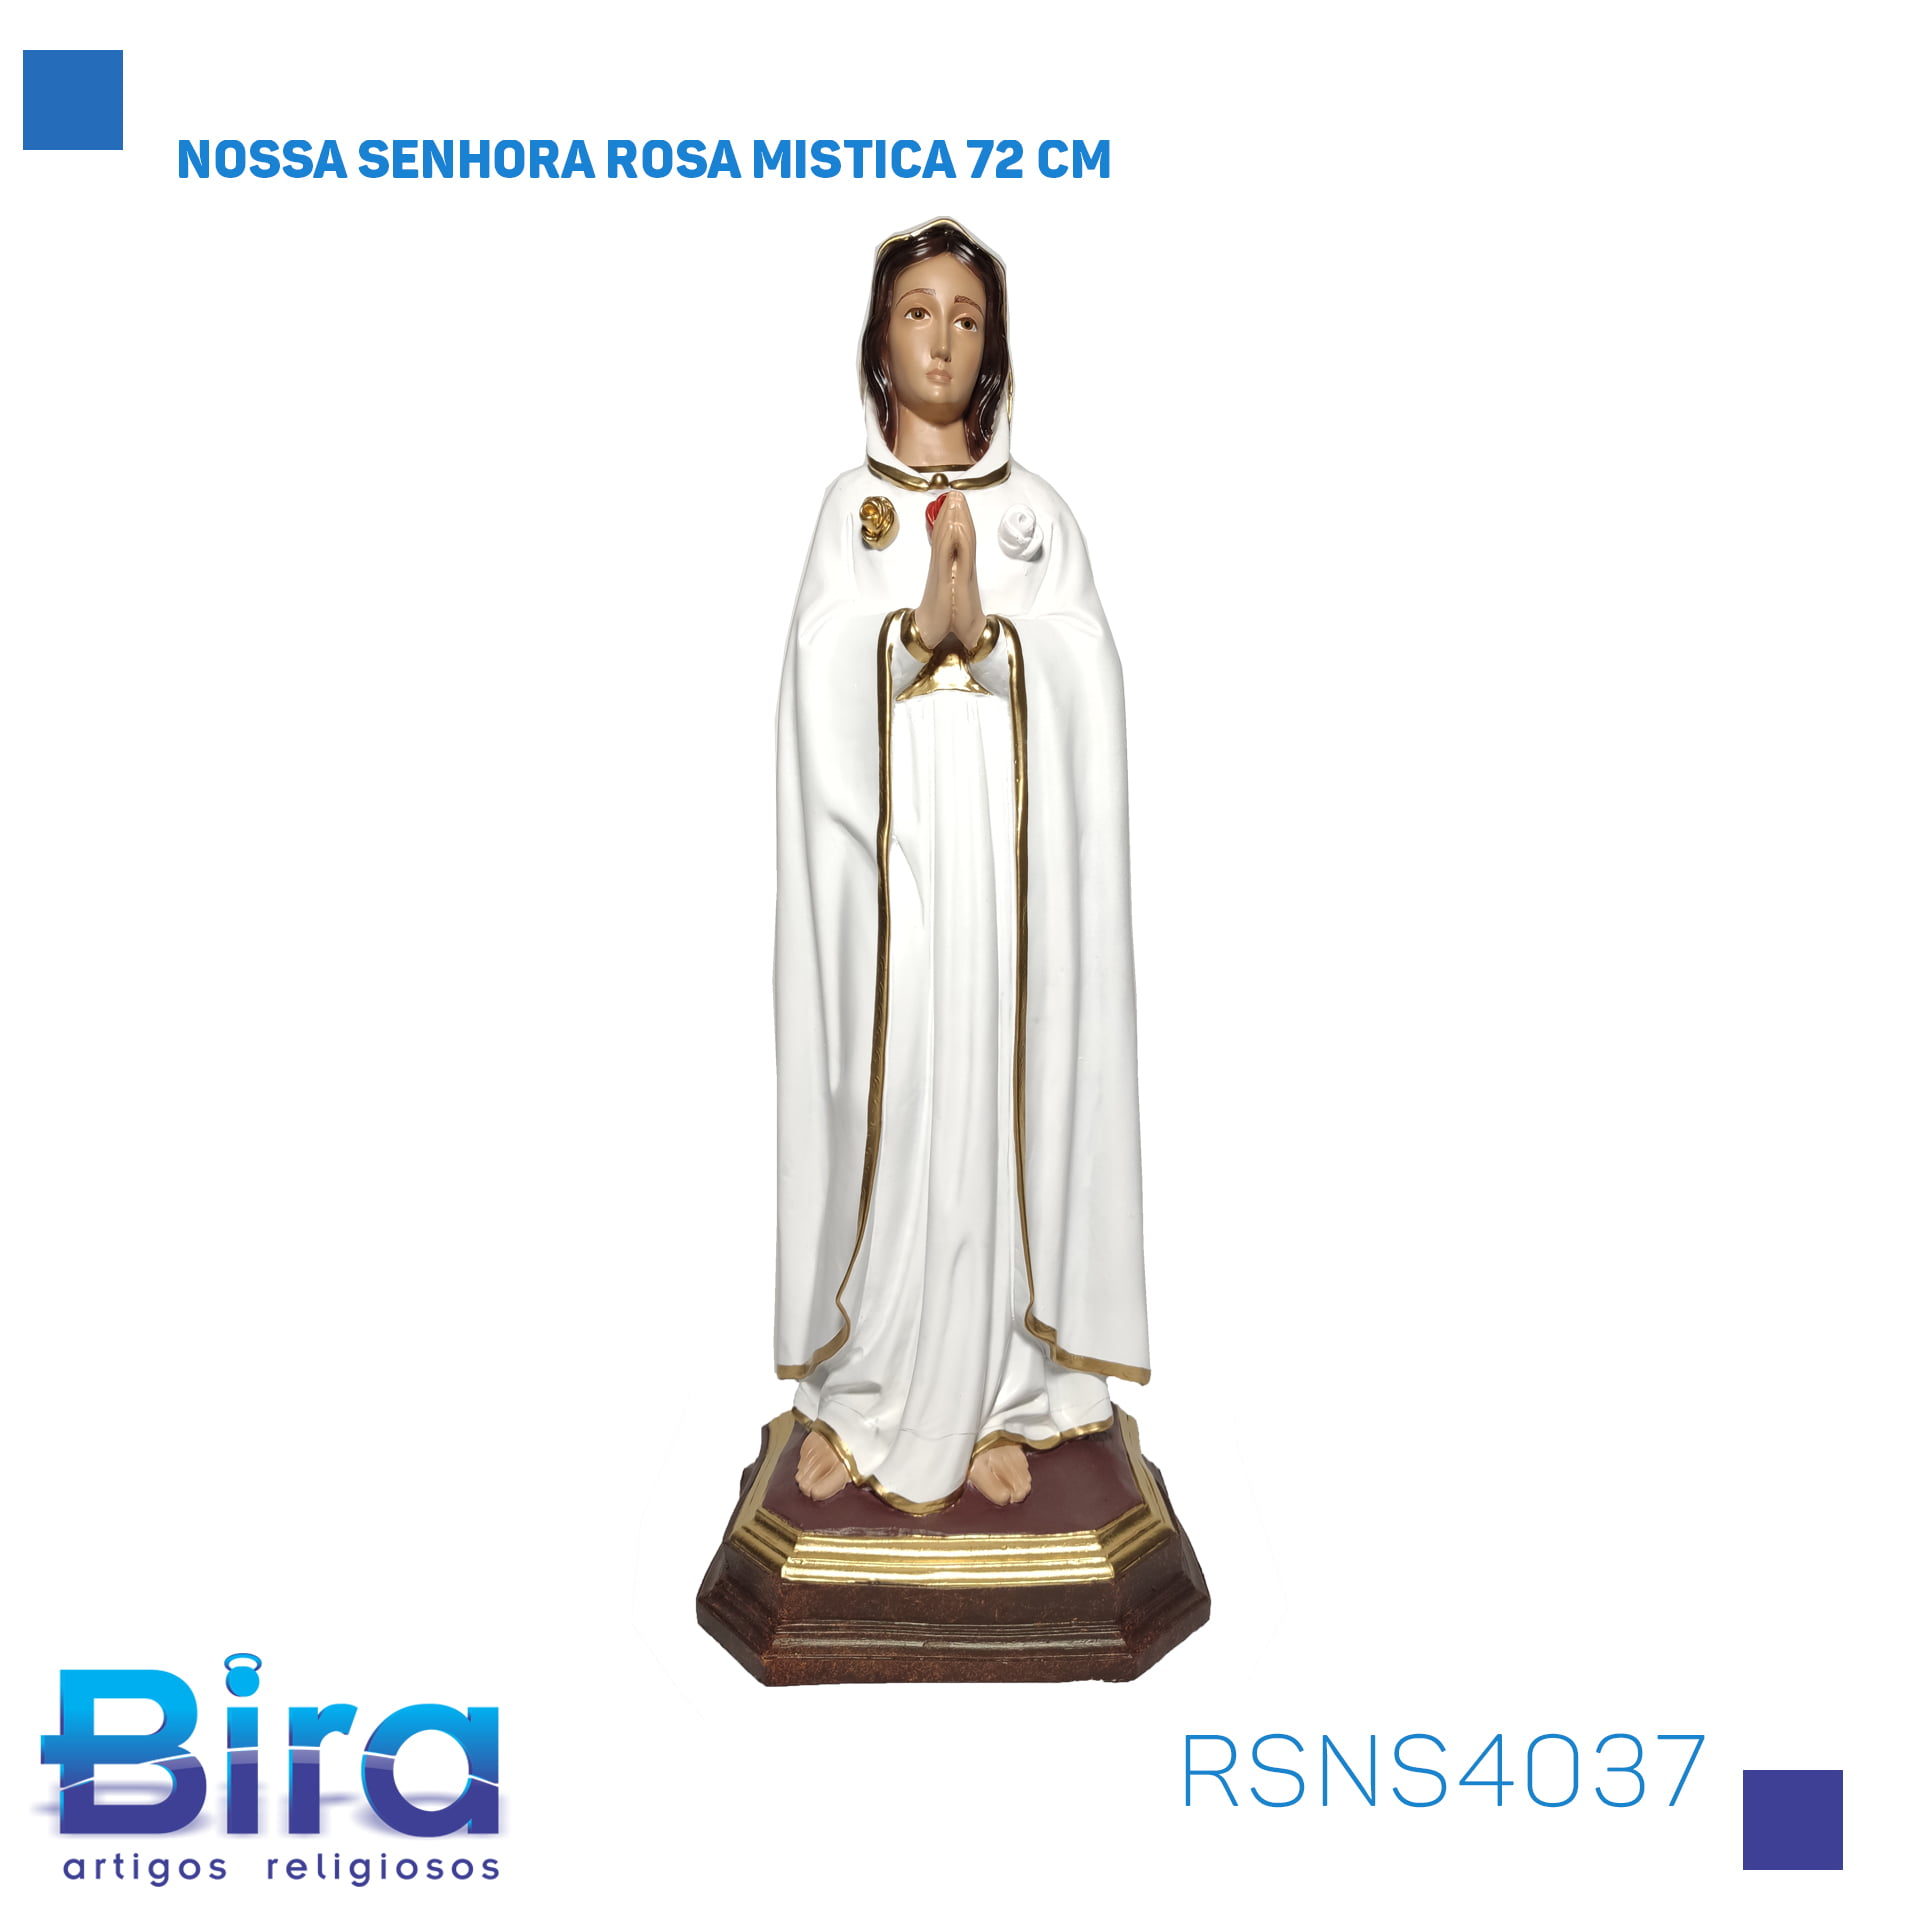 Bira Artigos Religiosos - NOSSA SENHORA ROSA MISTICA 72 CM Cód. RSNS4037